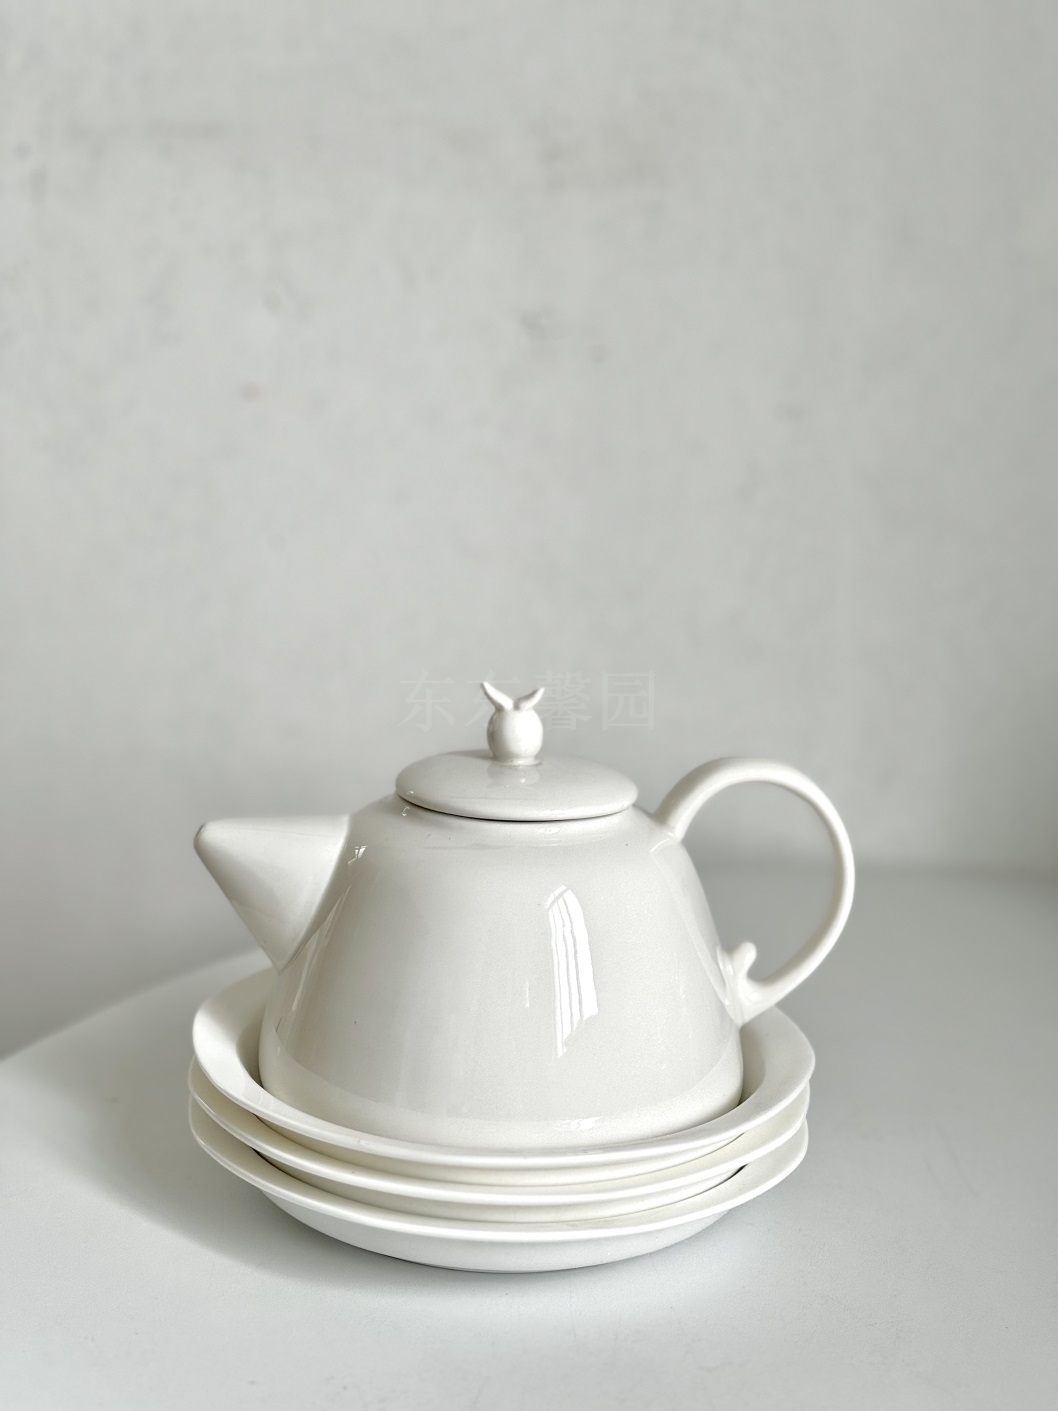 瓷质细腻 北欧简约纯白色带过滤孔茶壶 500ml下午茶泡茶水壶耐热